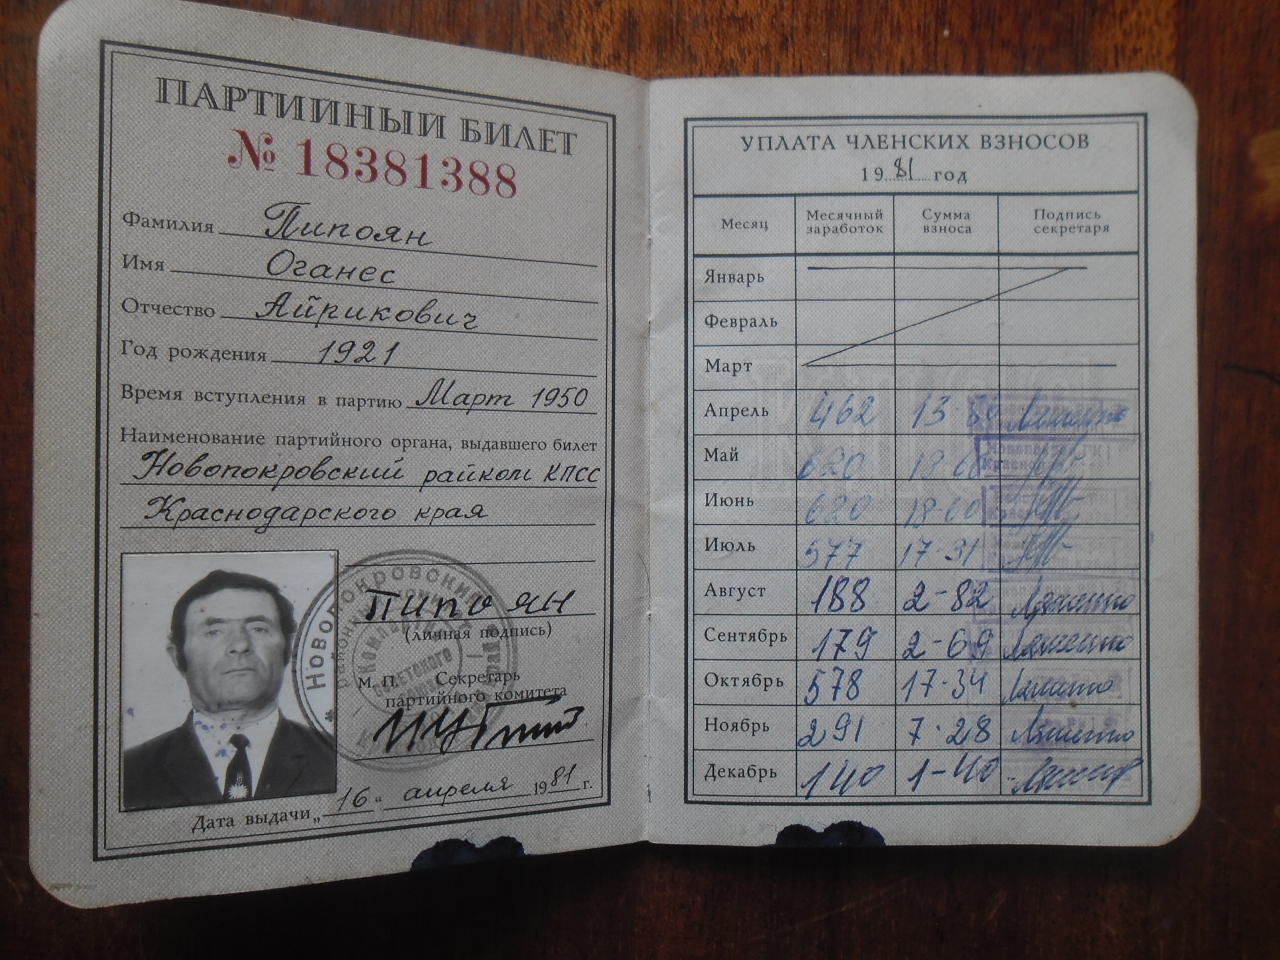 Պարտիական տոմս՝  Հովհաննես Հայրապետի Պիպոյանի (Հայրենական պատերազմի մասնակից)